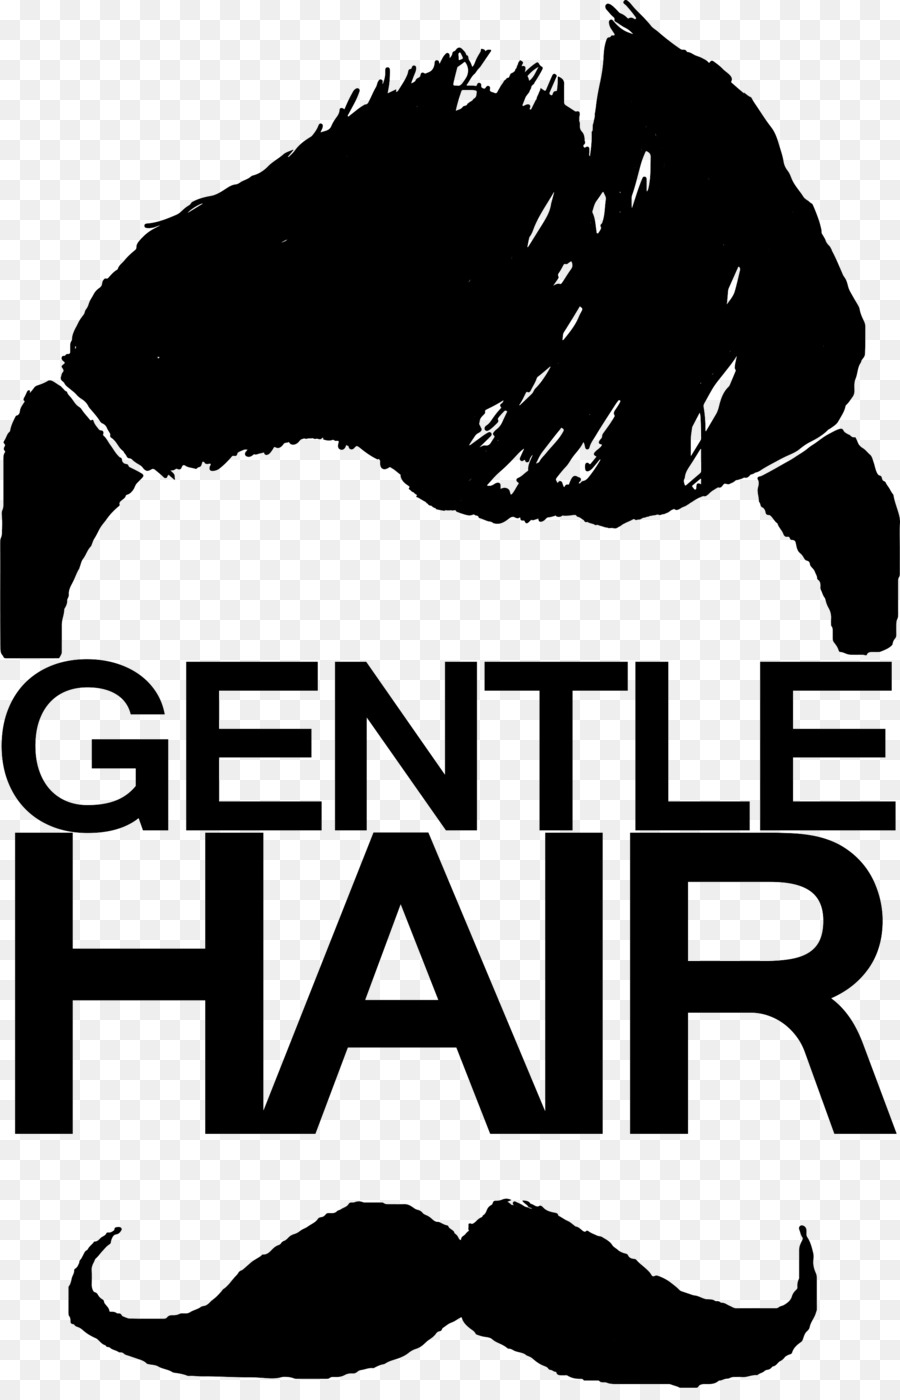 Hair Logo